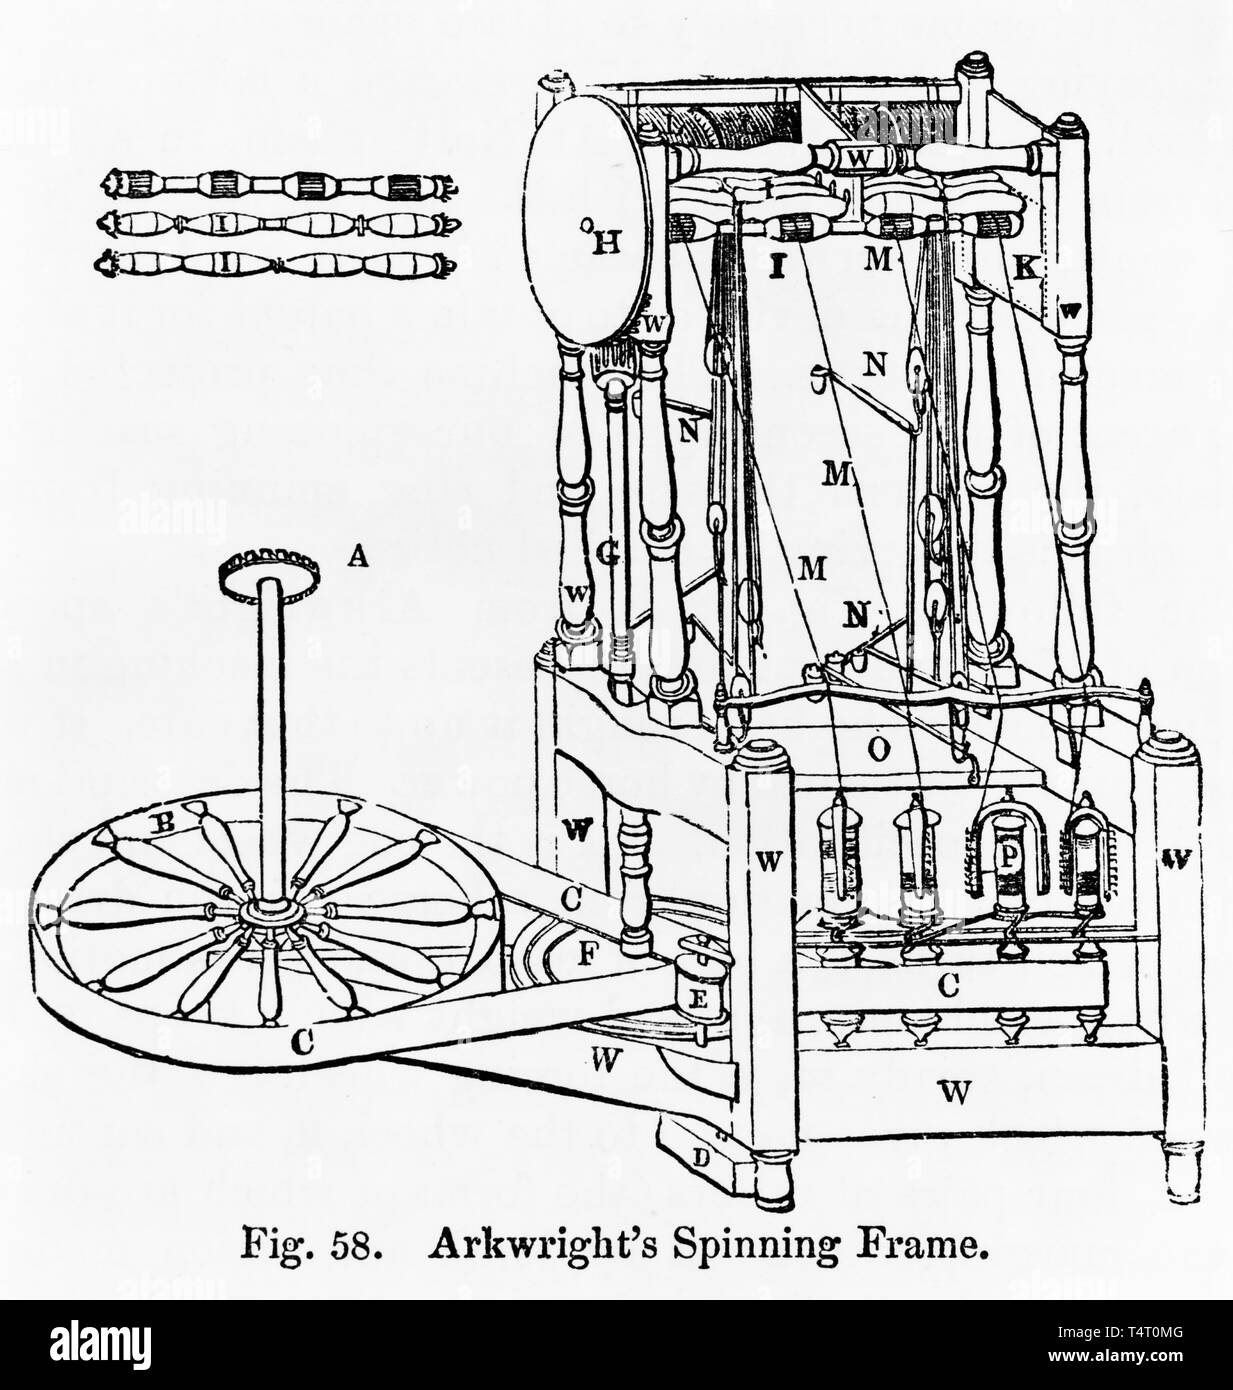 Illustration de Sir Richard Arkwright's Spinning Frame, c. 1909 Banque D'Images